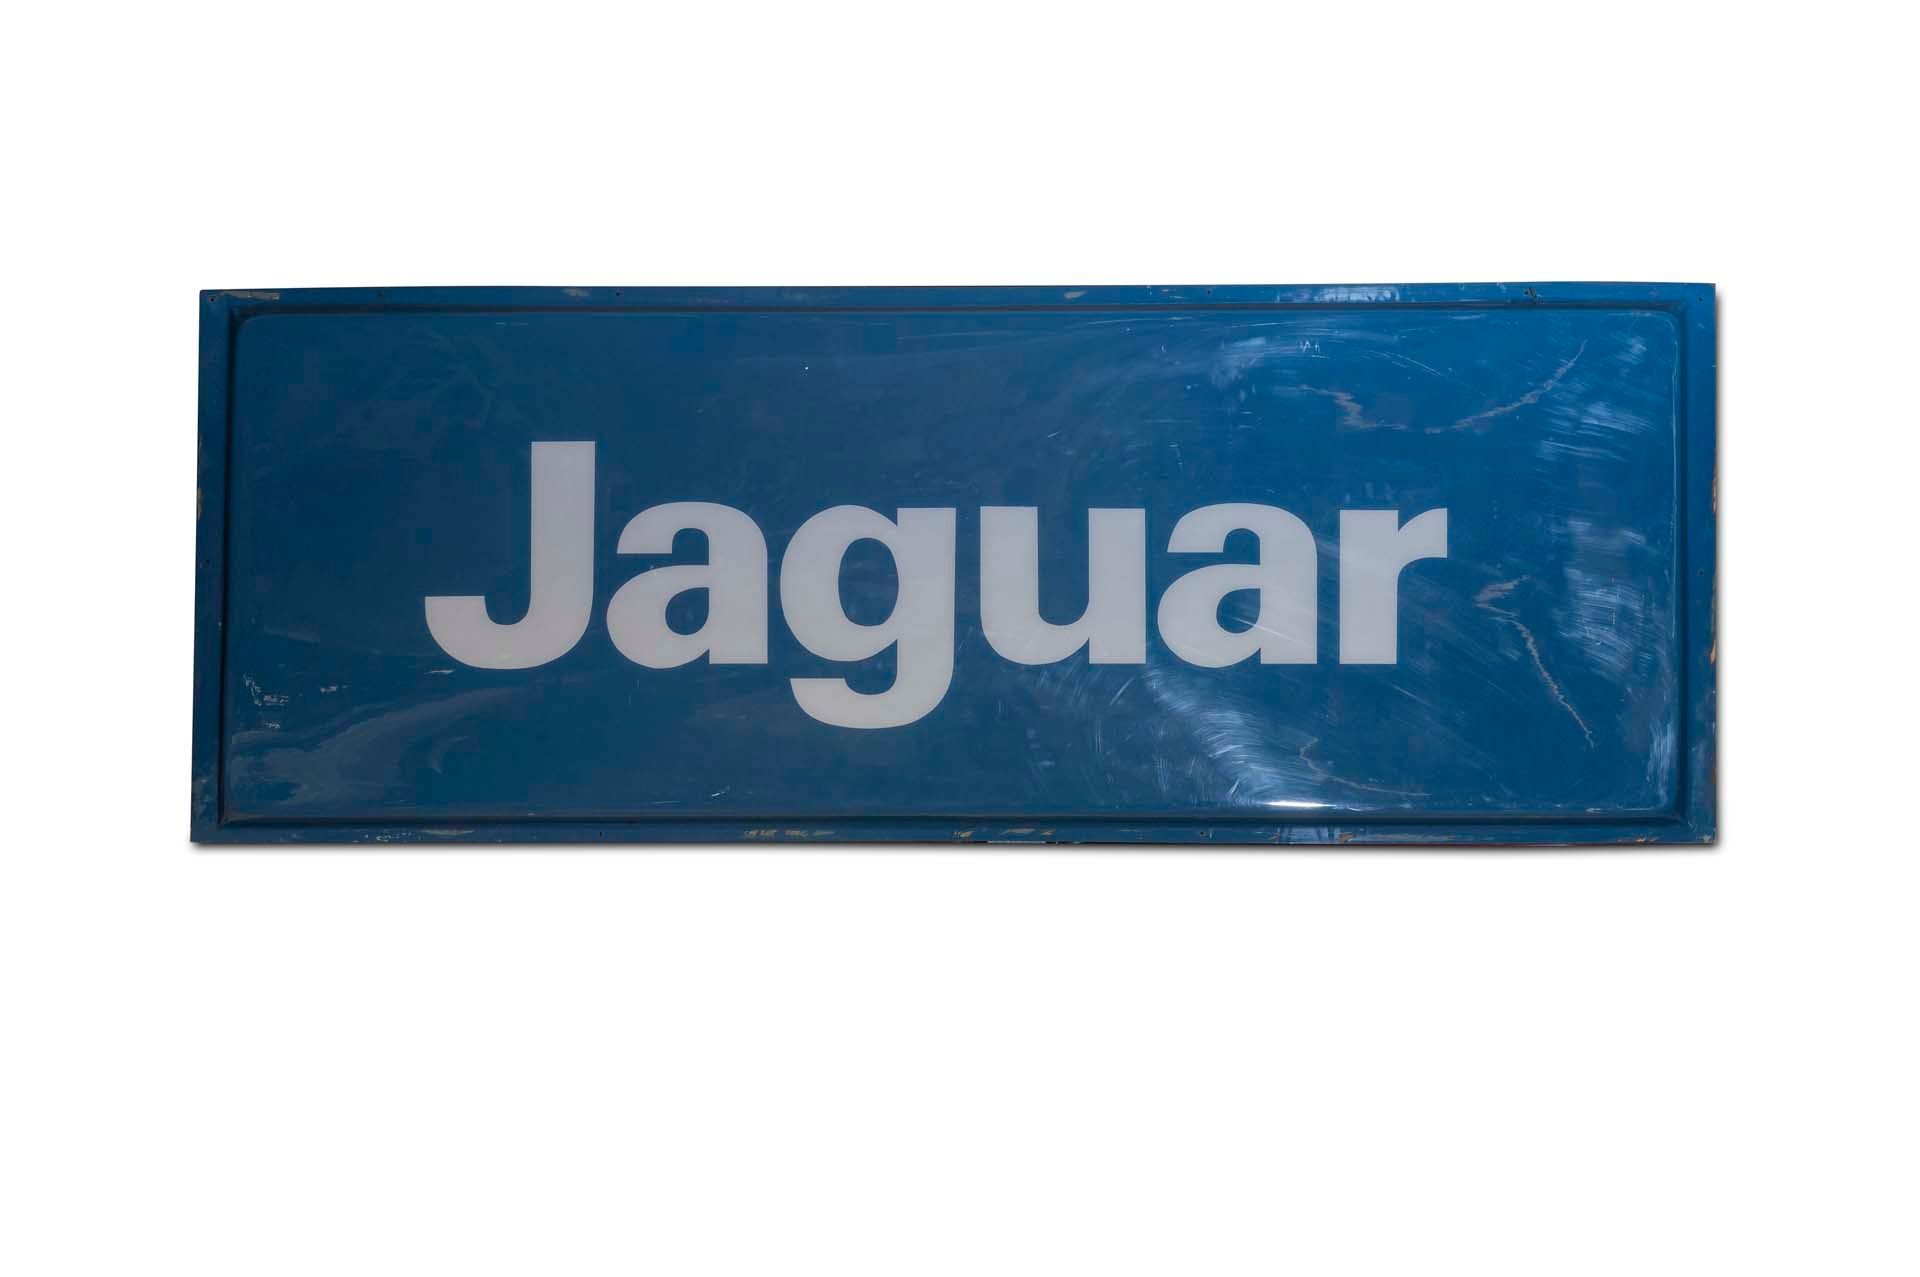 For Sale Large 'Jaguar Dealership' Sign